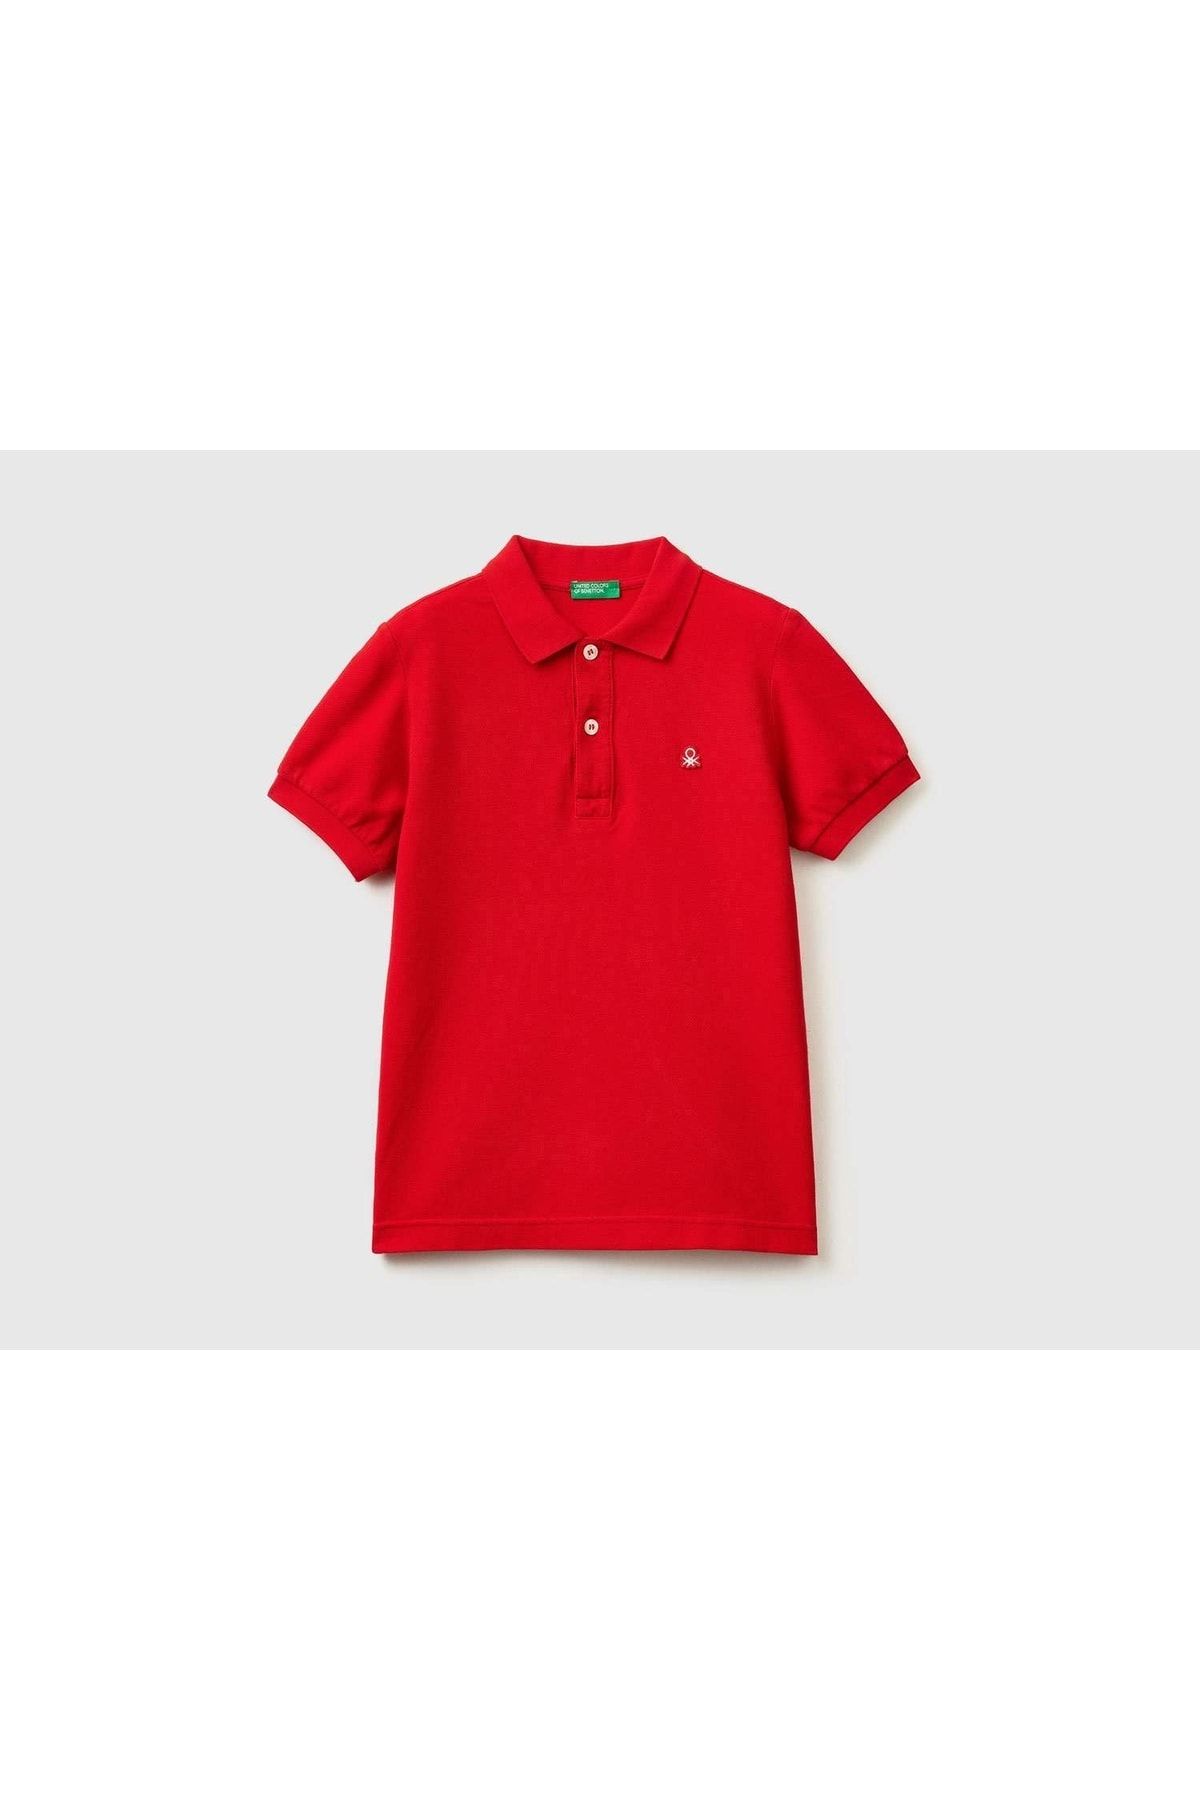 United Colors of Benetton Erkek Çocuk Kırmızı Logolu Polo T-shirt